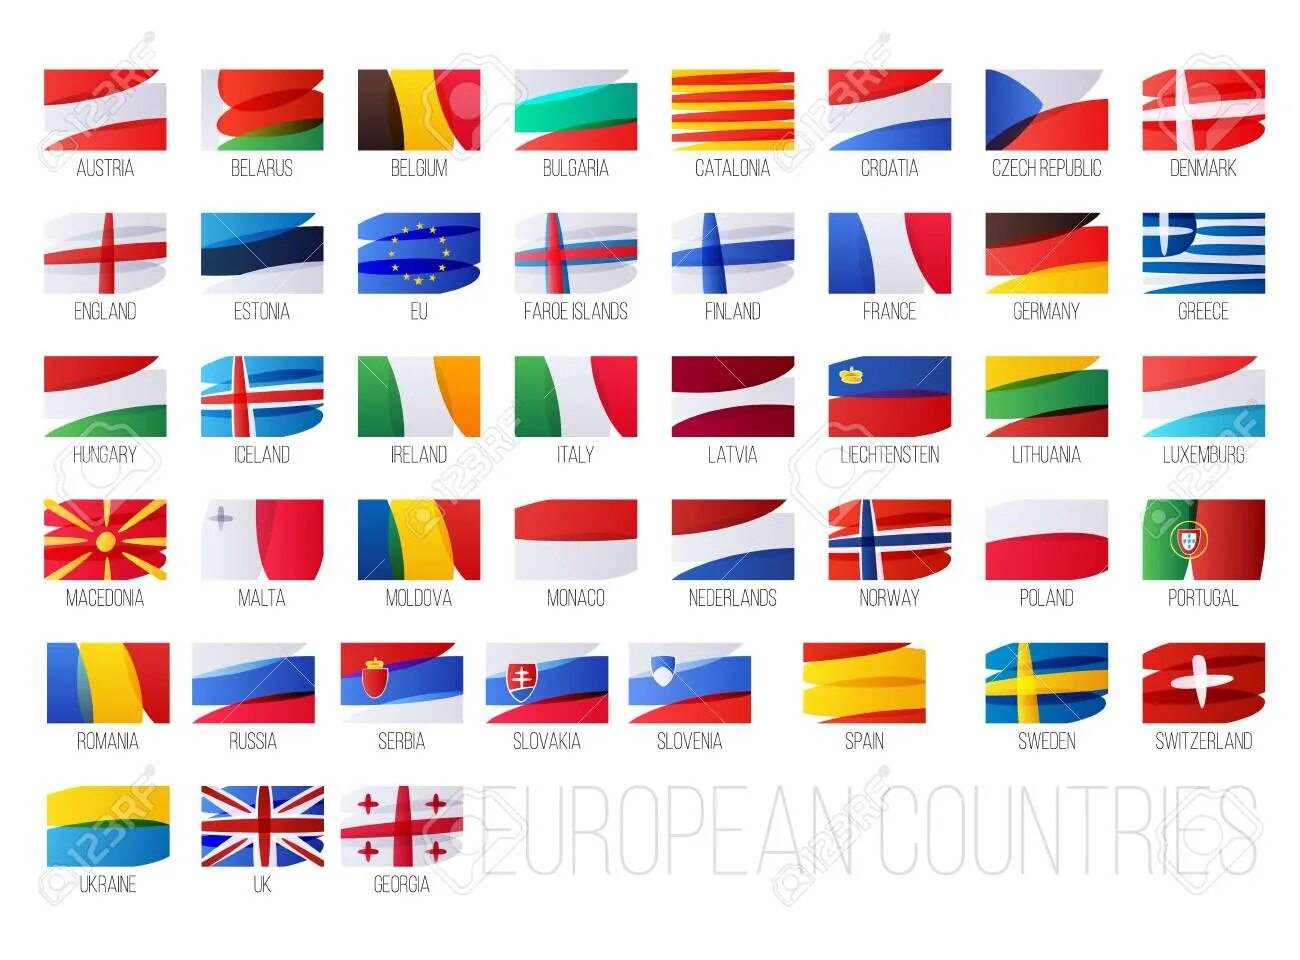 Флаги стран Евросоюза с названиями страны на русском. Флаги европейских государств. Флаги Евросоюза с названиями страны на русском языке. Флаги Европы с названиями страны для детей.